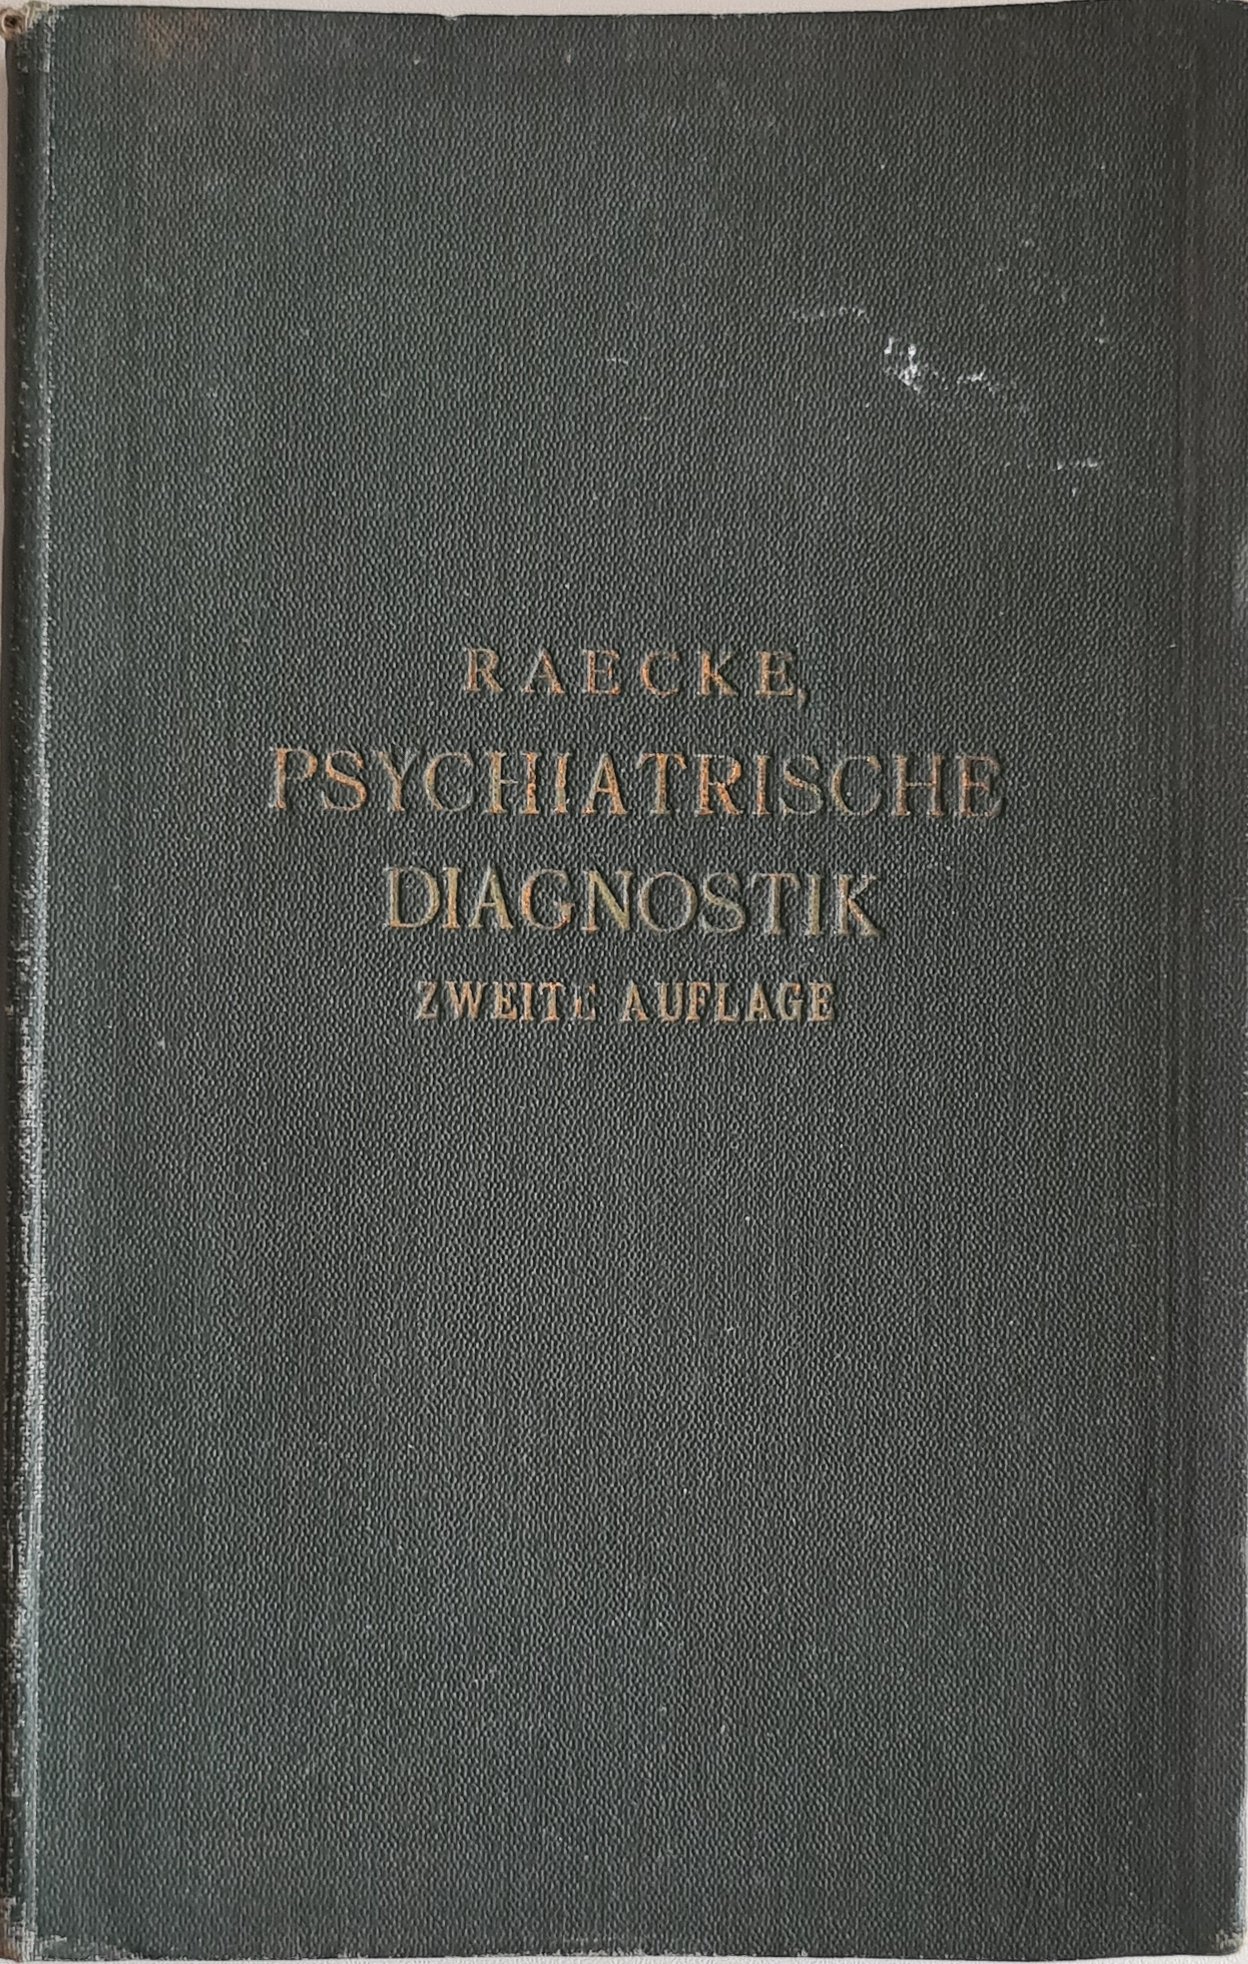 Psychiatrische Diagnostik (Krankenhausmuseum Bielefeld e.V. CC BY-NC-SA)